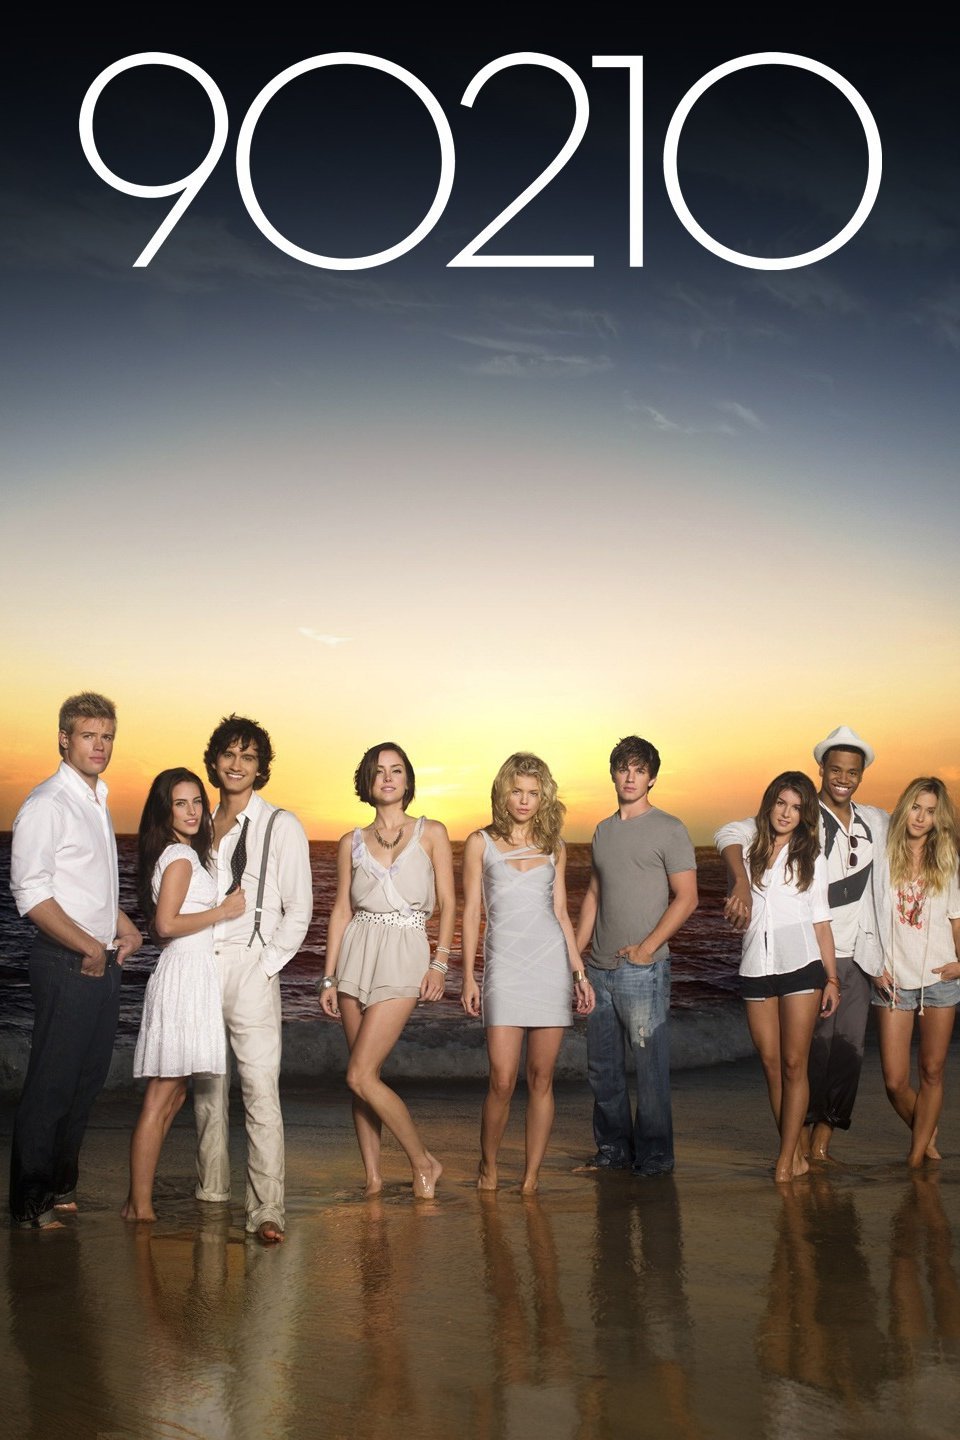 90210 show